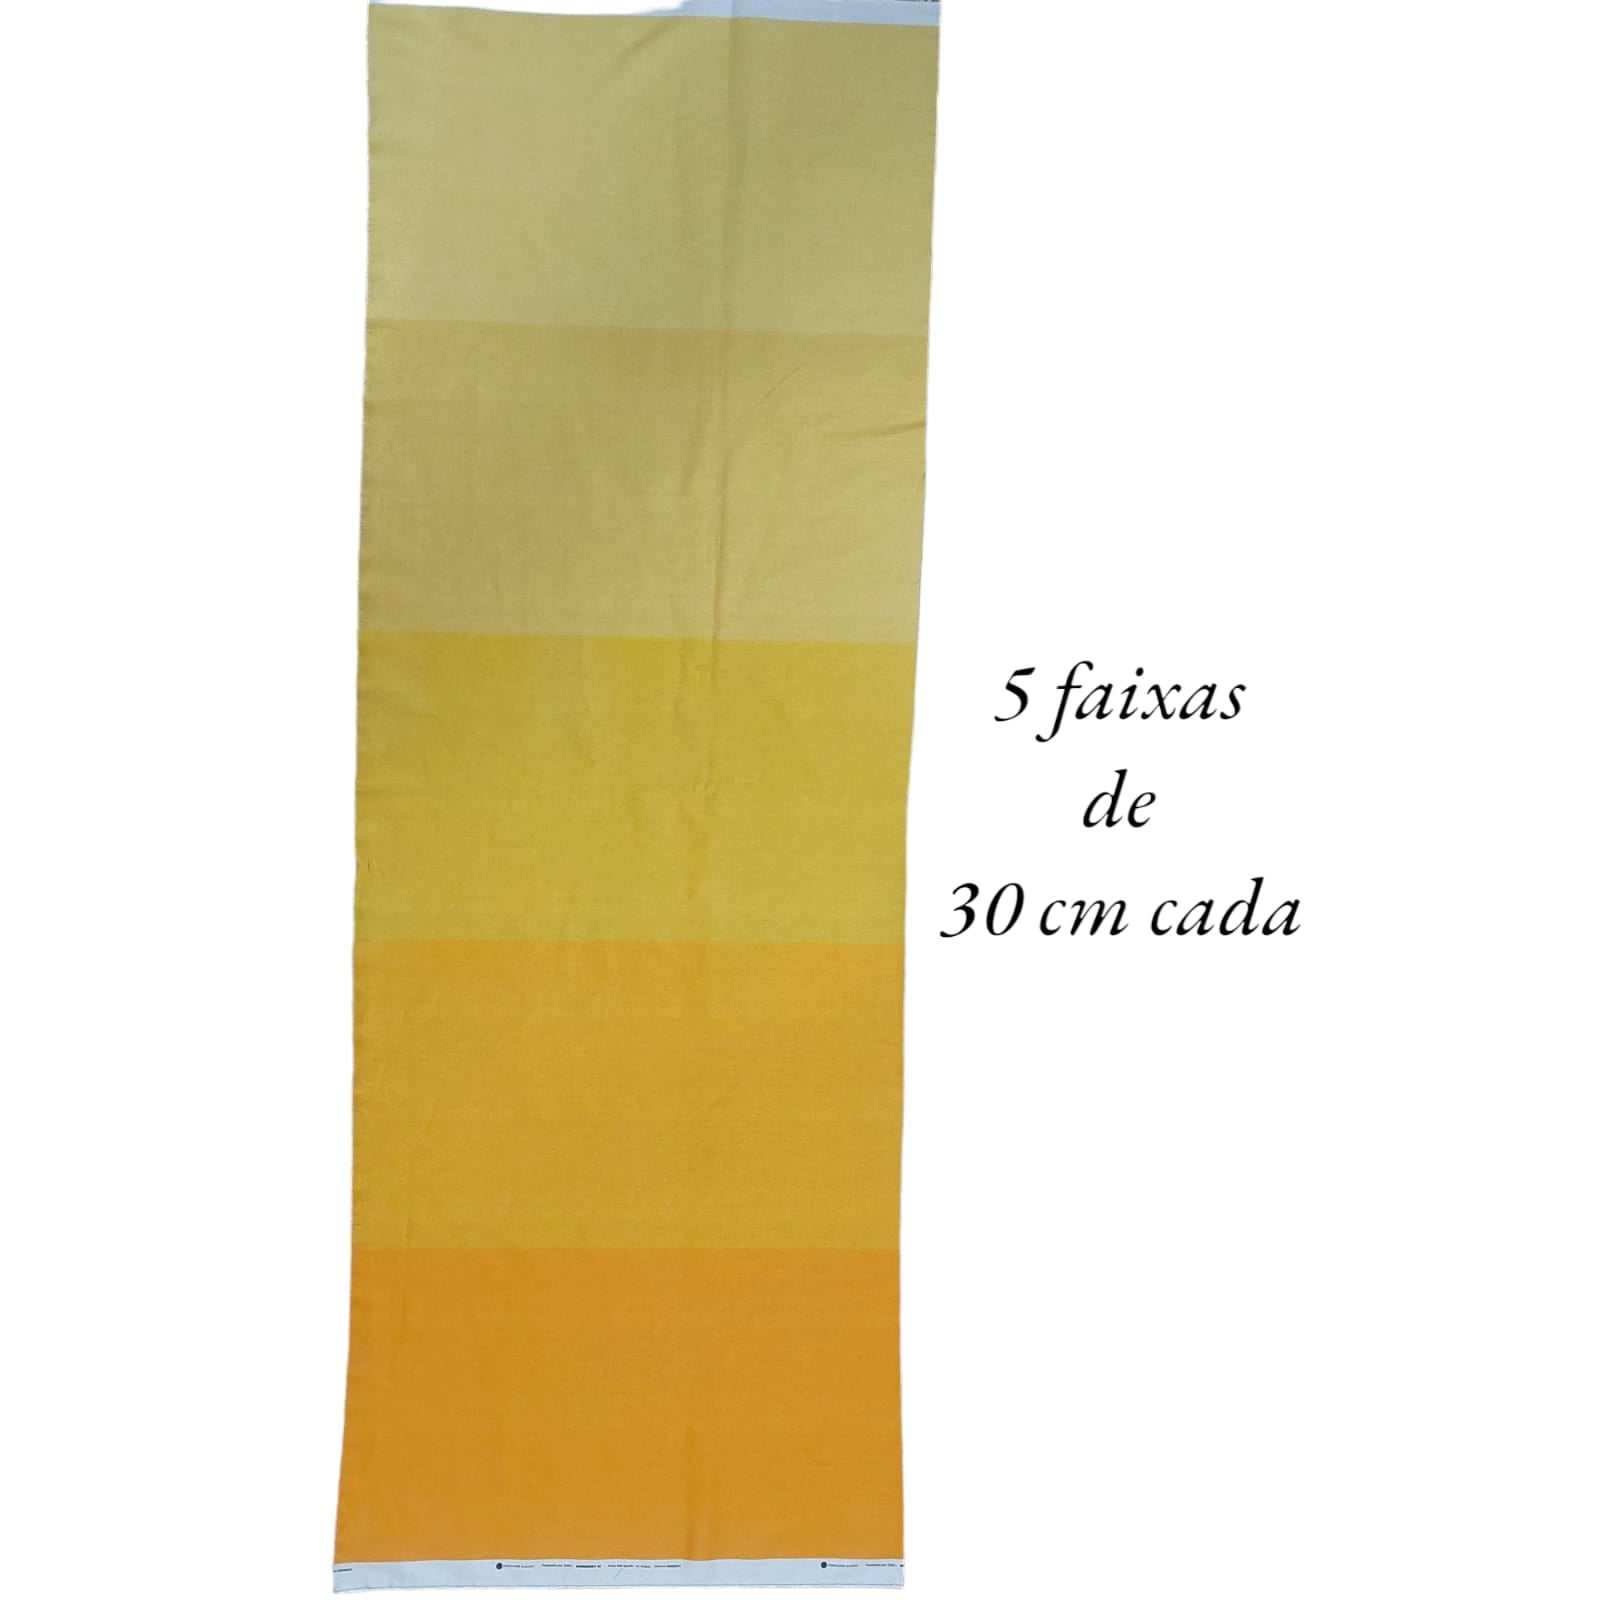 Tecido Tricoline digital - textura amarelo degradê - Col. Basics for All - Fernando Maluhy  (50x1,50 cm)                          